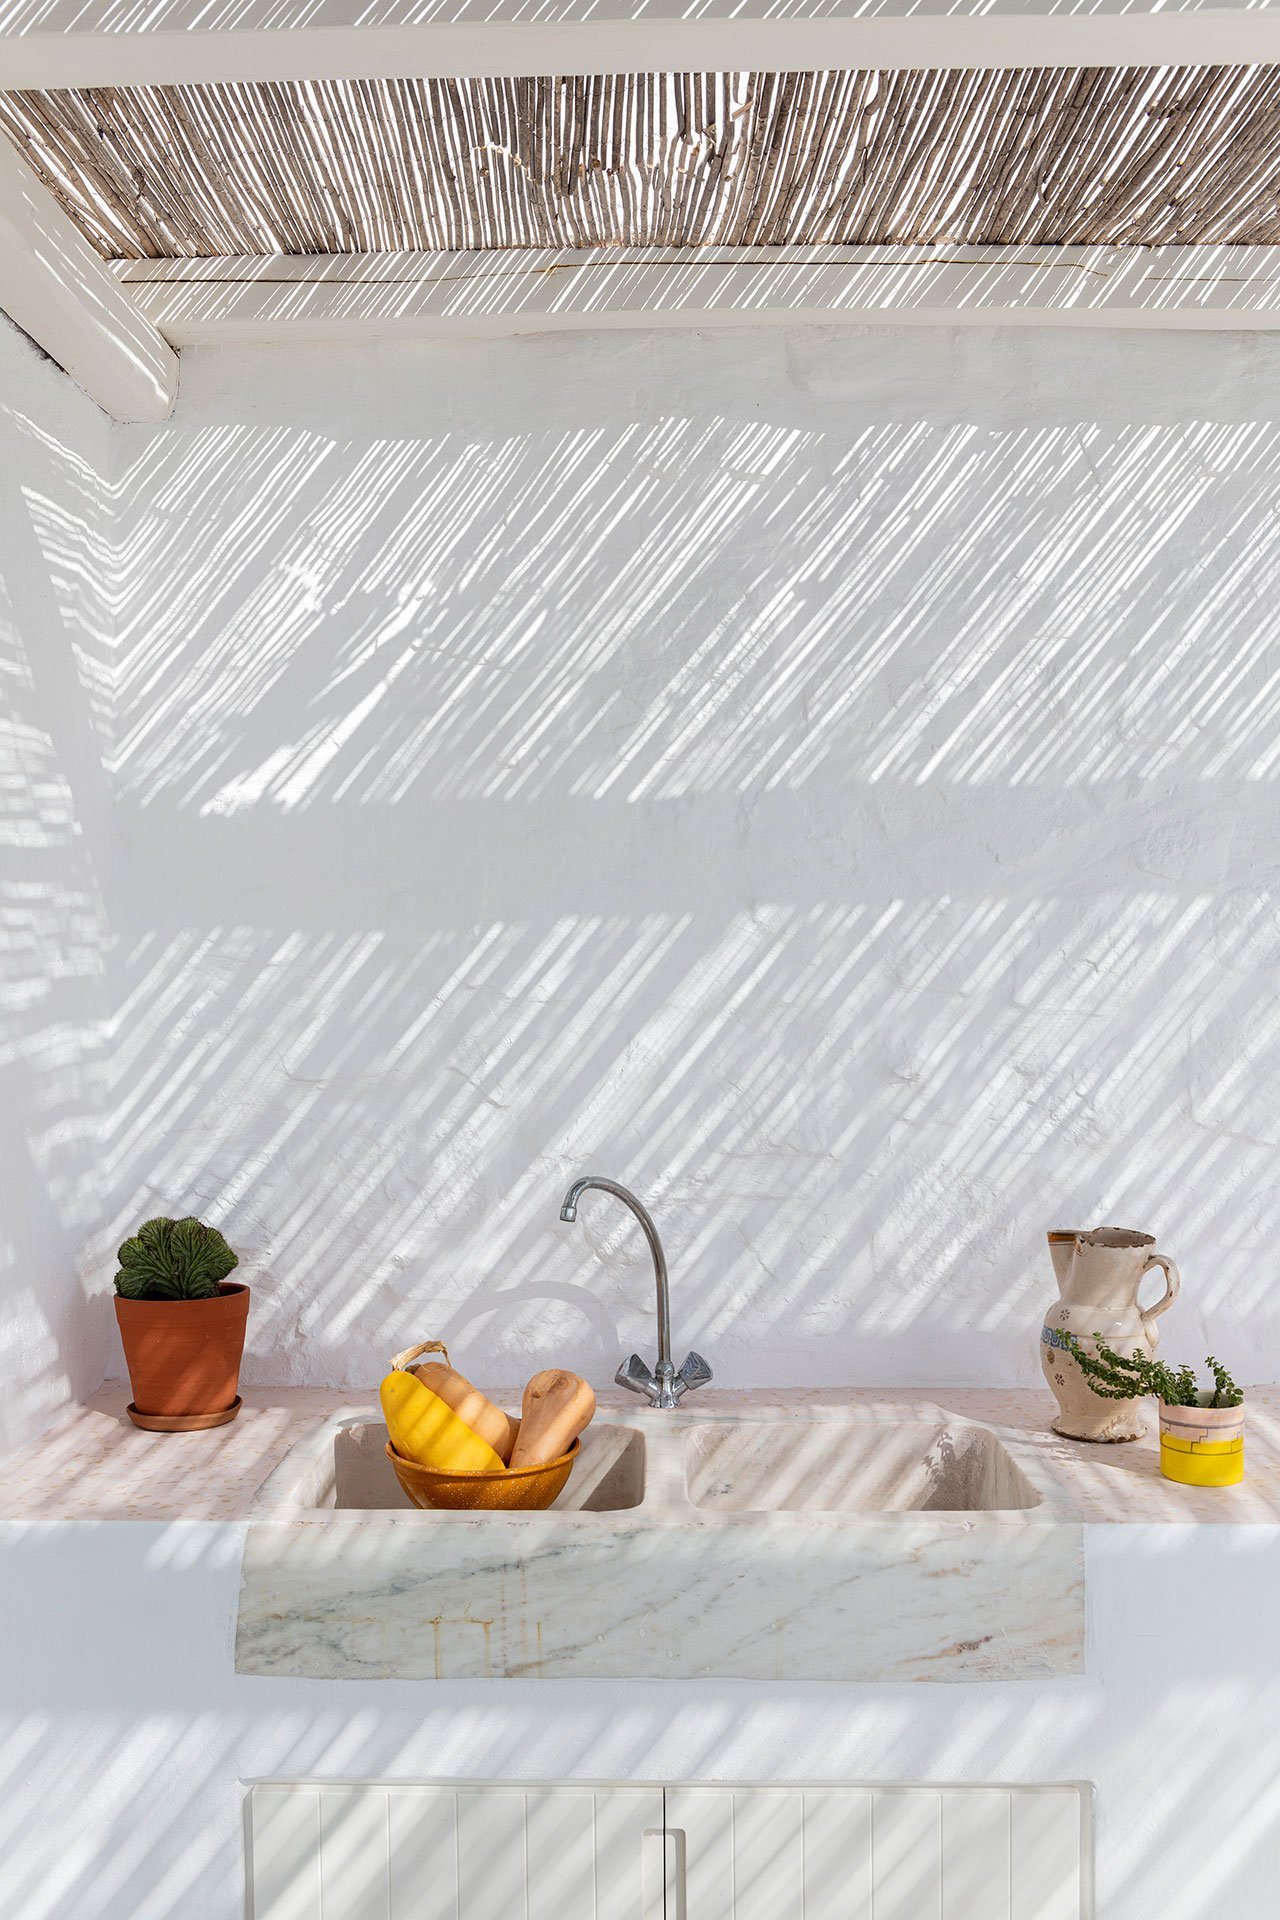 Casa de verano con fachada blanca en el mediterraneo en la isla de Mykonos cocina exterior